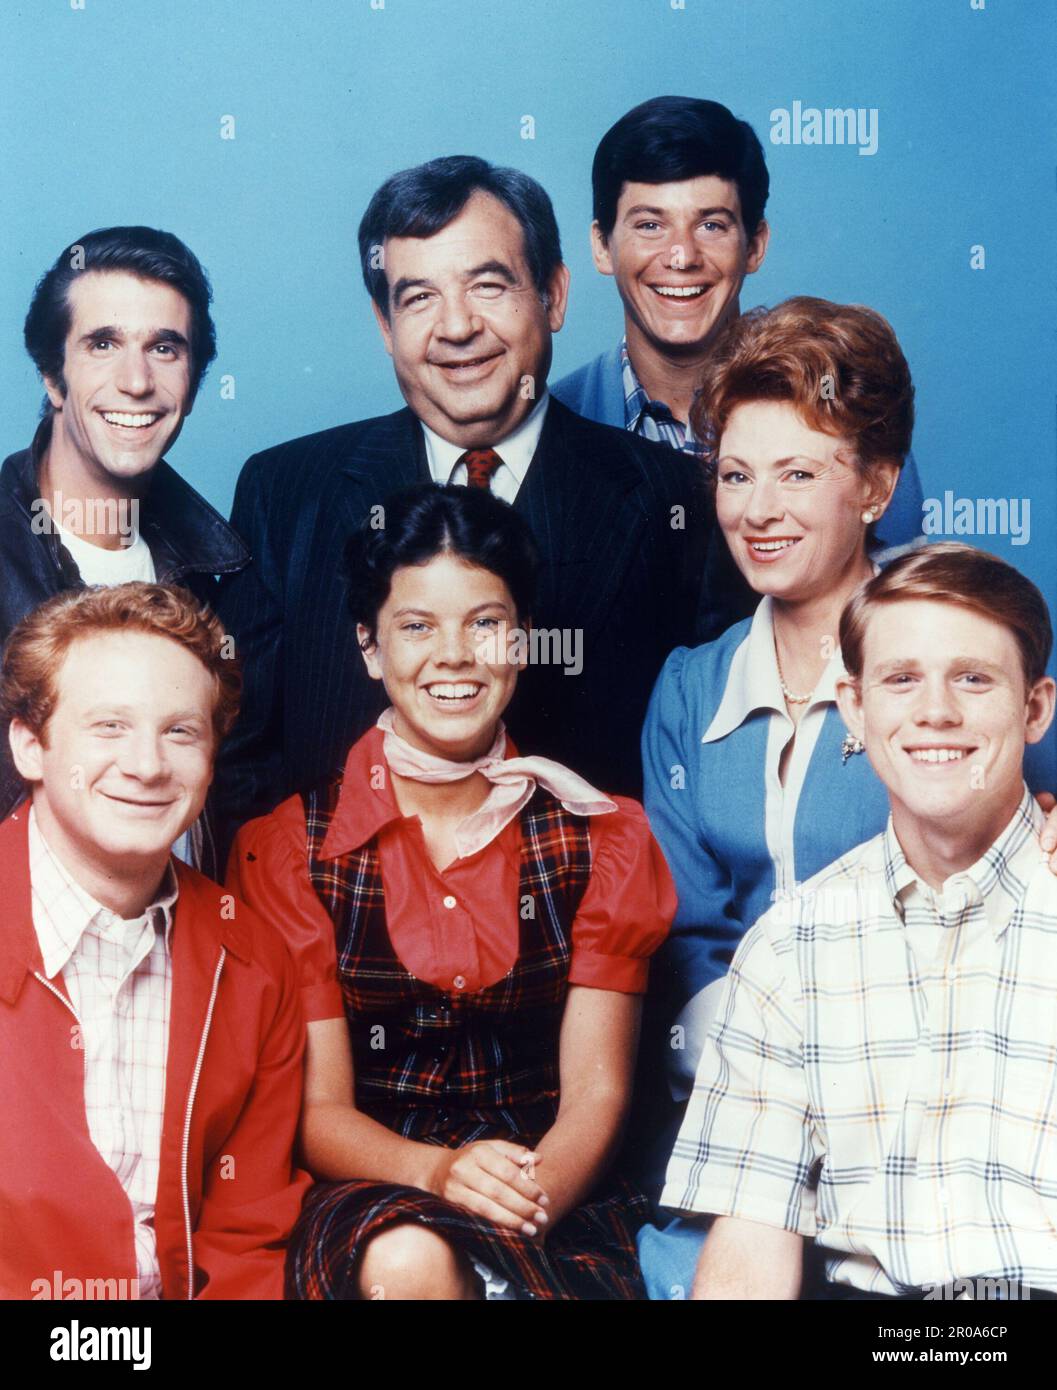 15 giugno 1979, Hollywood, CA, USA: Cast "Happy Days": DONNY MOST, HENRY WINKLER, ERIN MORAN, TOM BOSLEY, ANSON WILLIAMS, MARION ROSS, RON HOWARD. Happy Days una sitcom televisiva americana ha trasmesso su ABC dal 15 gennaio 1974, al 19 luglio 1984, 255 episodi di mezz'ora che coprono oltre 11 stagioni. Una delle serie di maggior successo del 1970s. La serie ha presentato una visione idealizzata della vita negli Stati Uniti Midwestern del 1950s e dei primi anni del 1960s. (Credit Image: © Miller-Milkis Productions/Entertainment Pictures via ZUMA Press Wire) SOLO PER USO EDITORIALE! Non per USO commerciale! Foto Stock